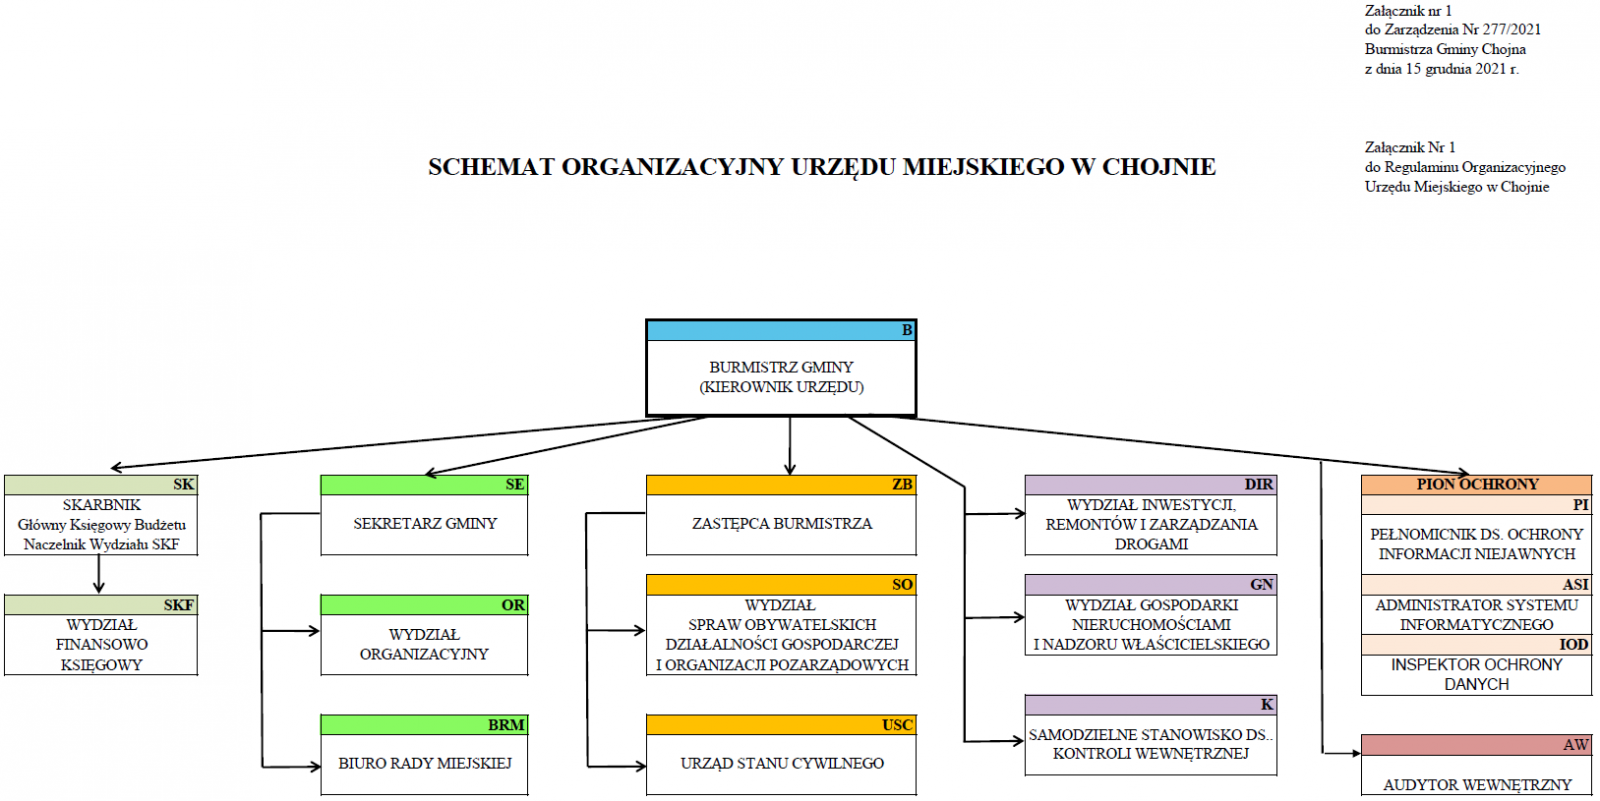 Schemat organizacyjny urzędu